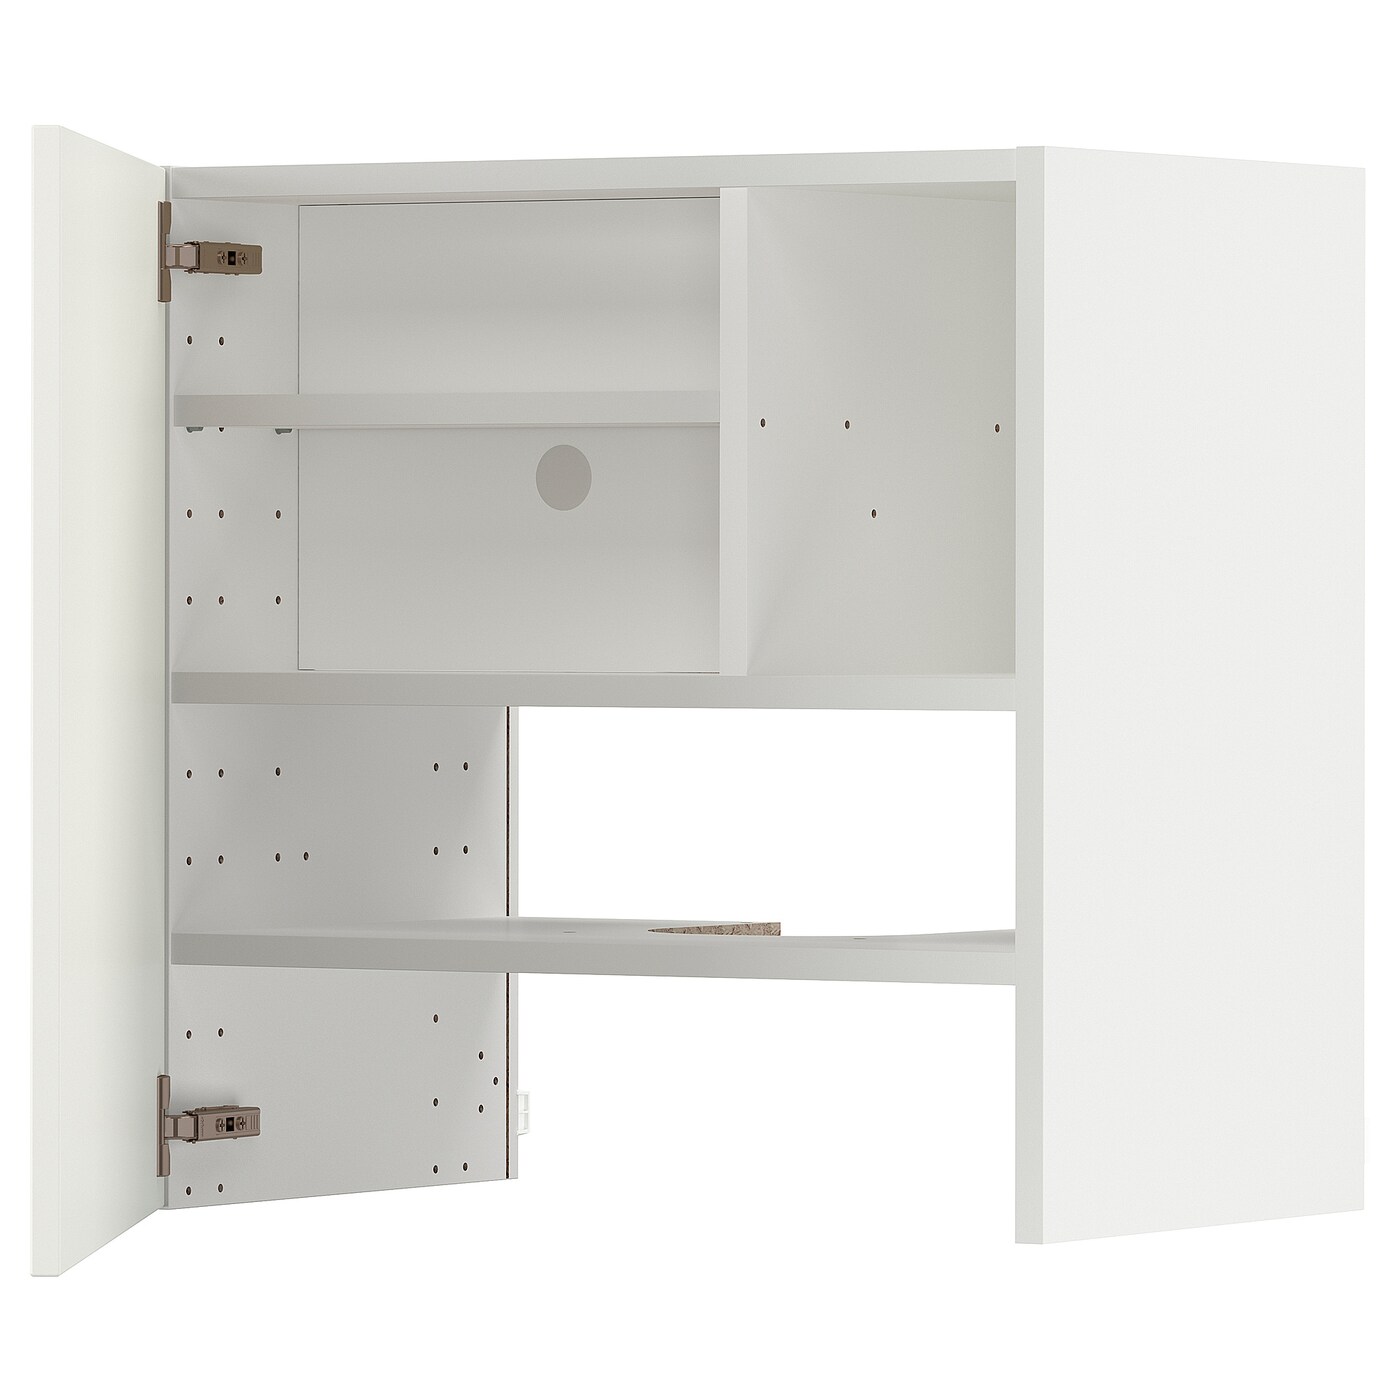 Навесной шкаф с полкой - METOD IKEA/ МЕТОД ИКЕА, 60х60 см, белый/бежевый